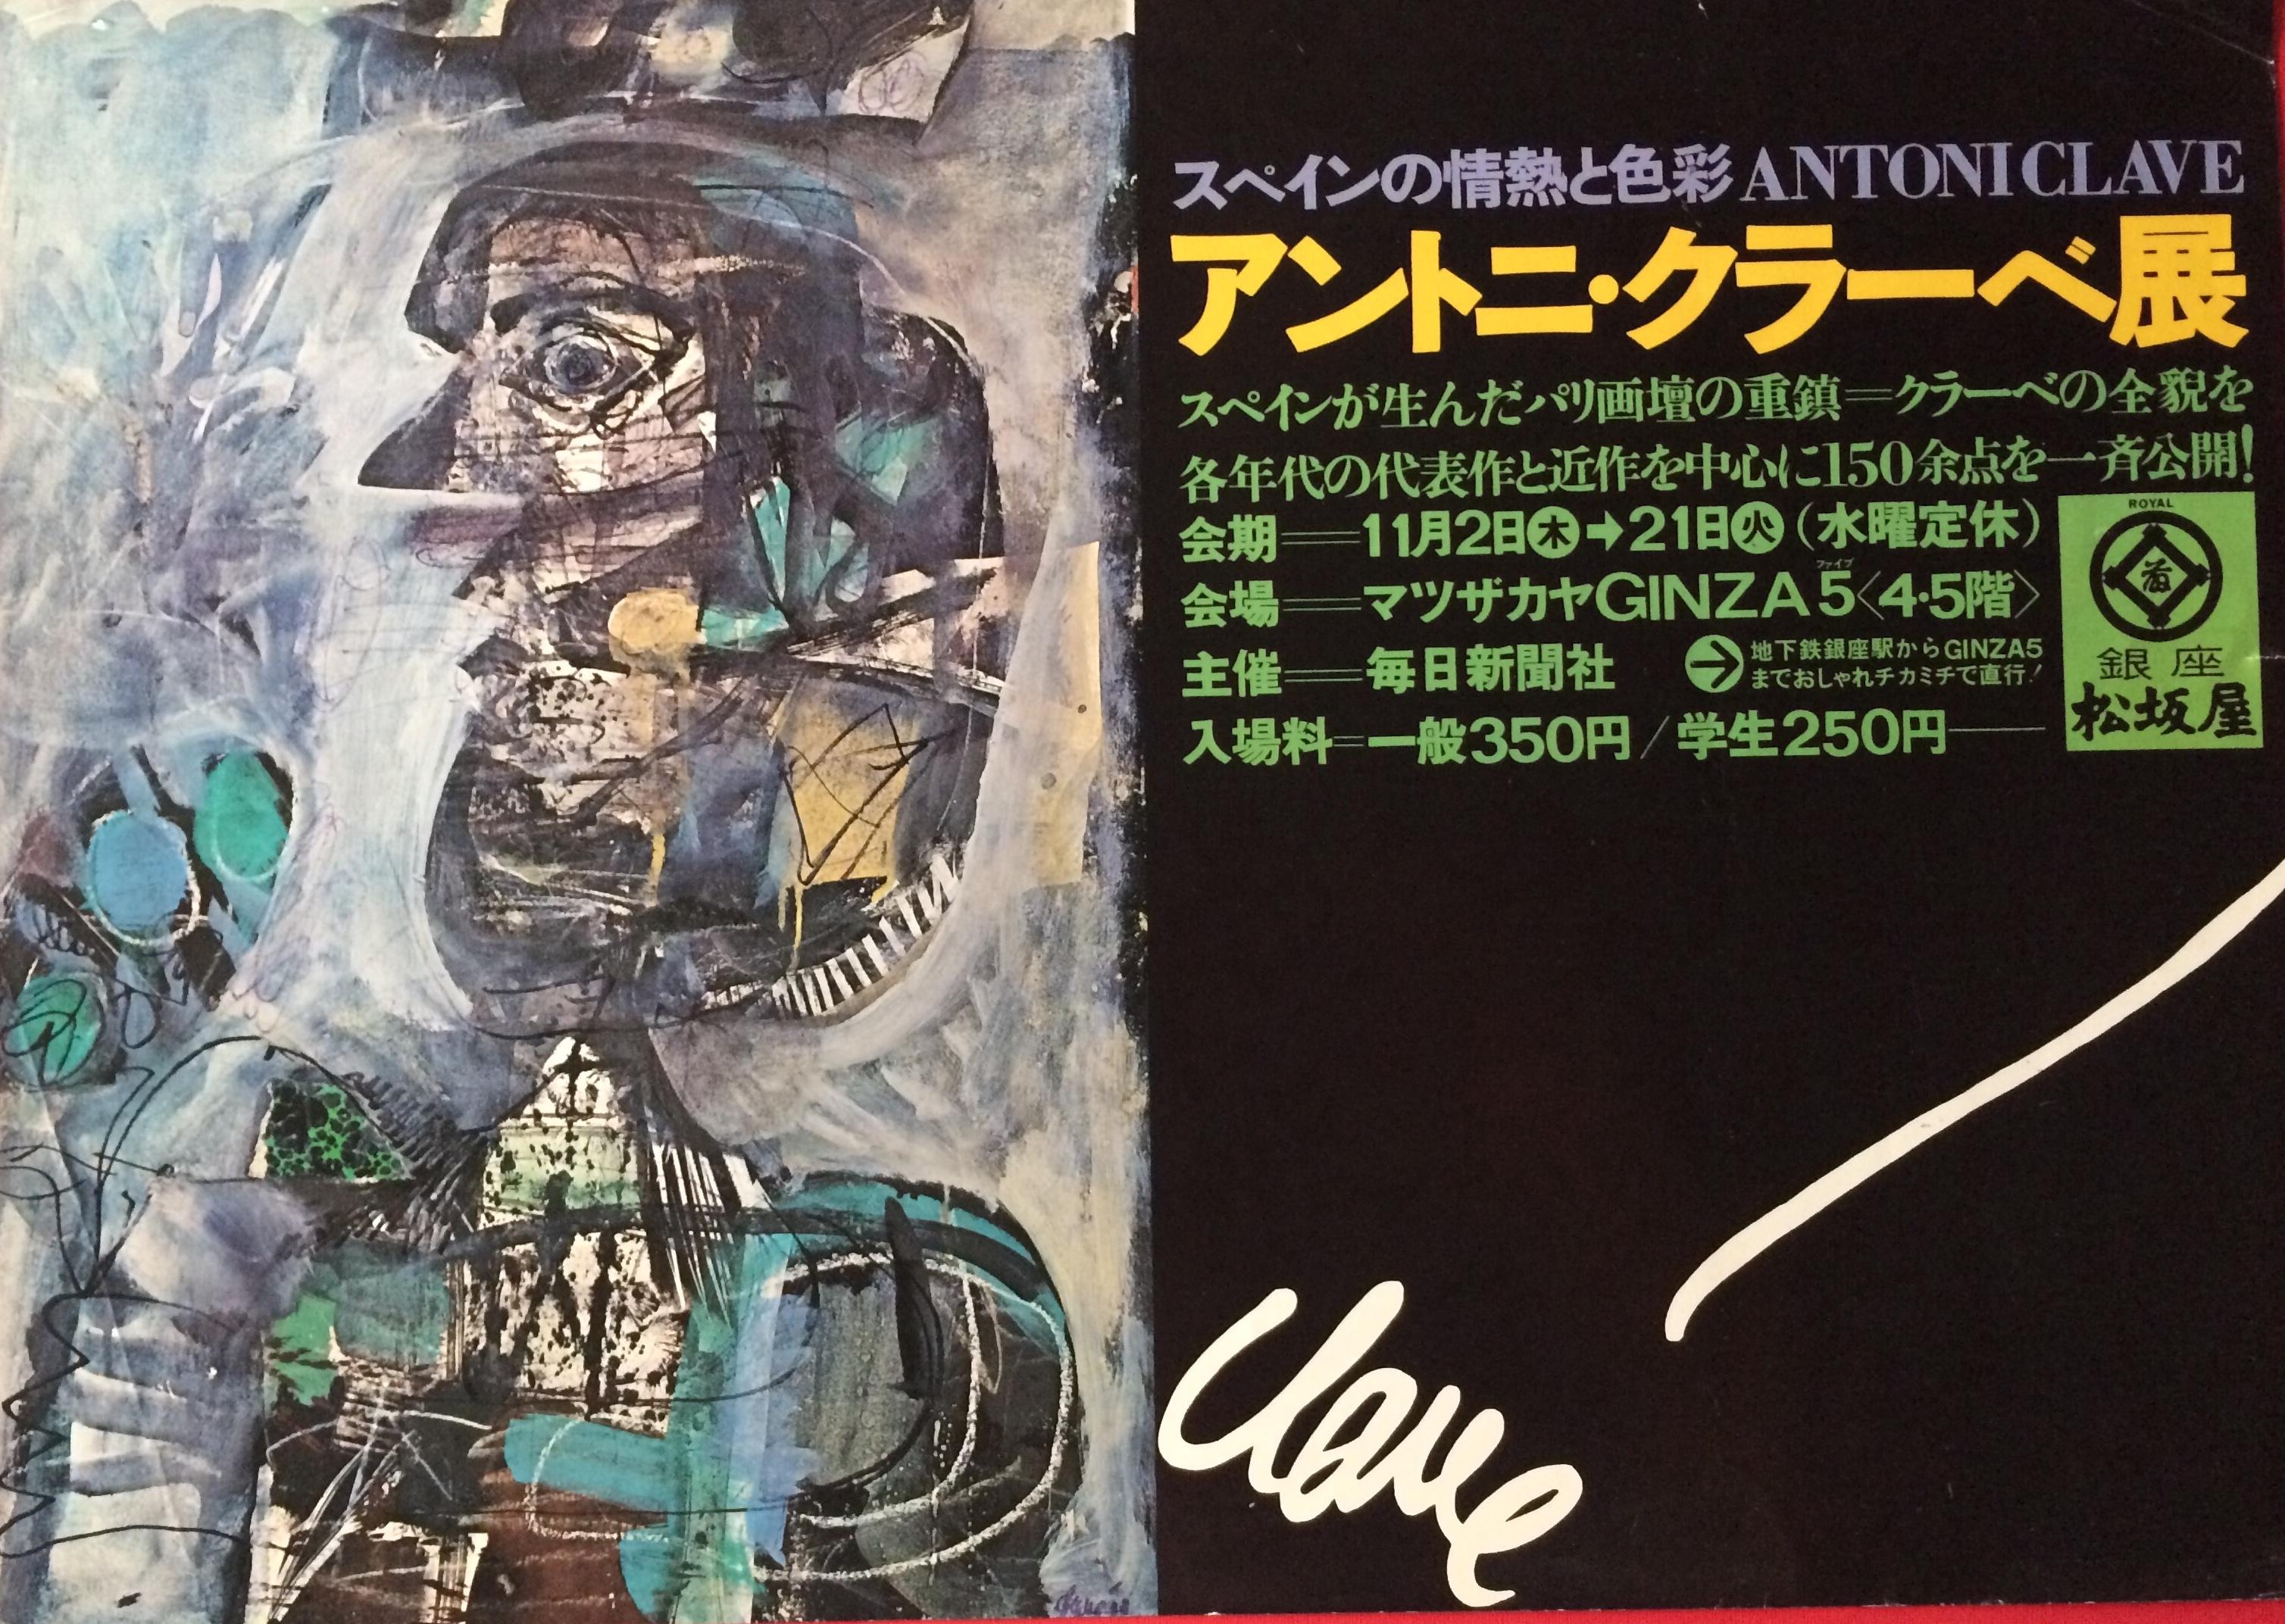 Original-Ausstellungsplakat des spanischen Künstlers Antoni Clave von seiner Ausstellung in Ginza Japan. 

Dieses interessante Plakat zeigt deutlich ein wunderbares Werk dieses brillanten Künstlers. Antoni Clavé (5. April 1913 - 1. September 2005)